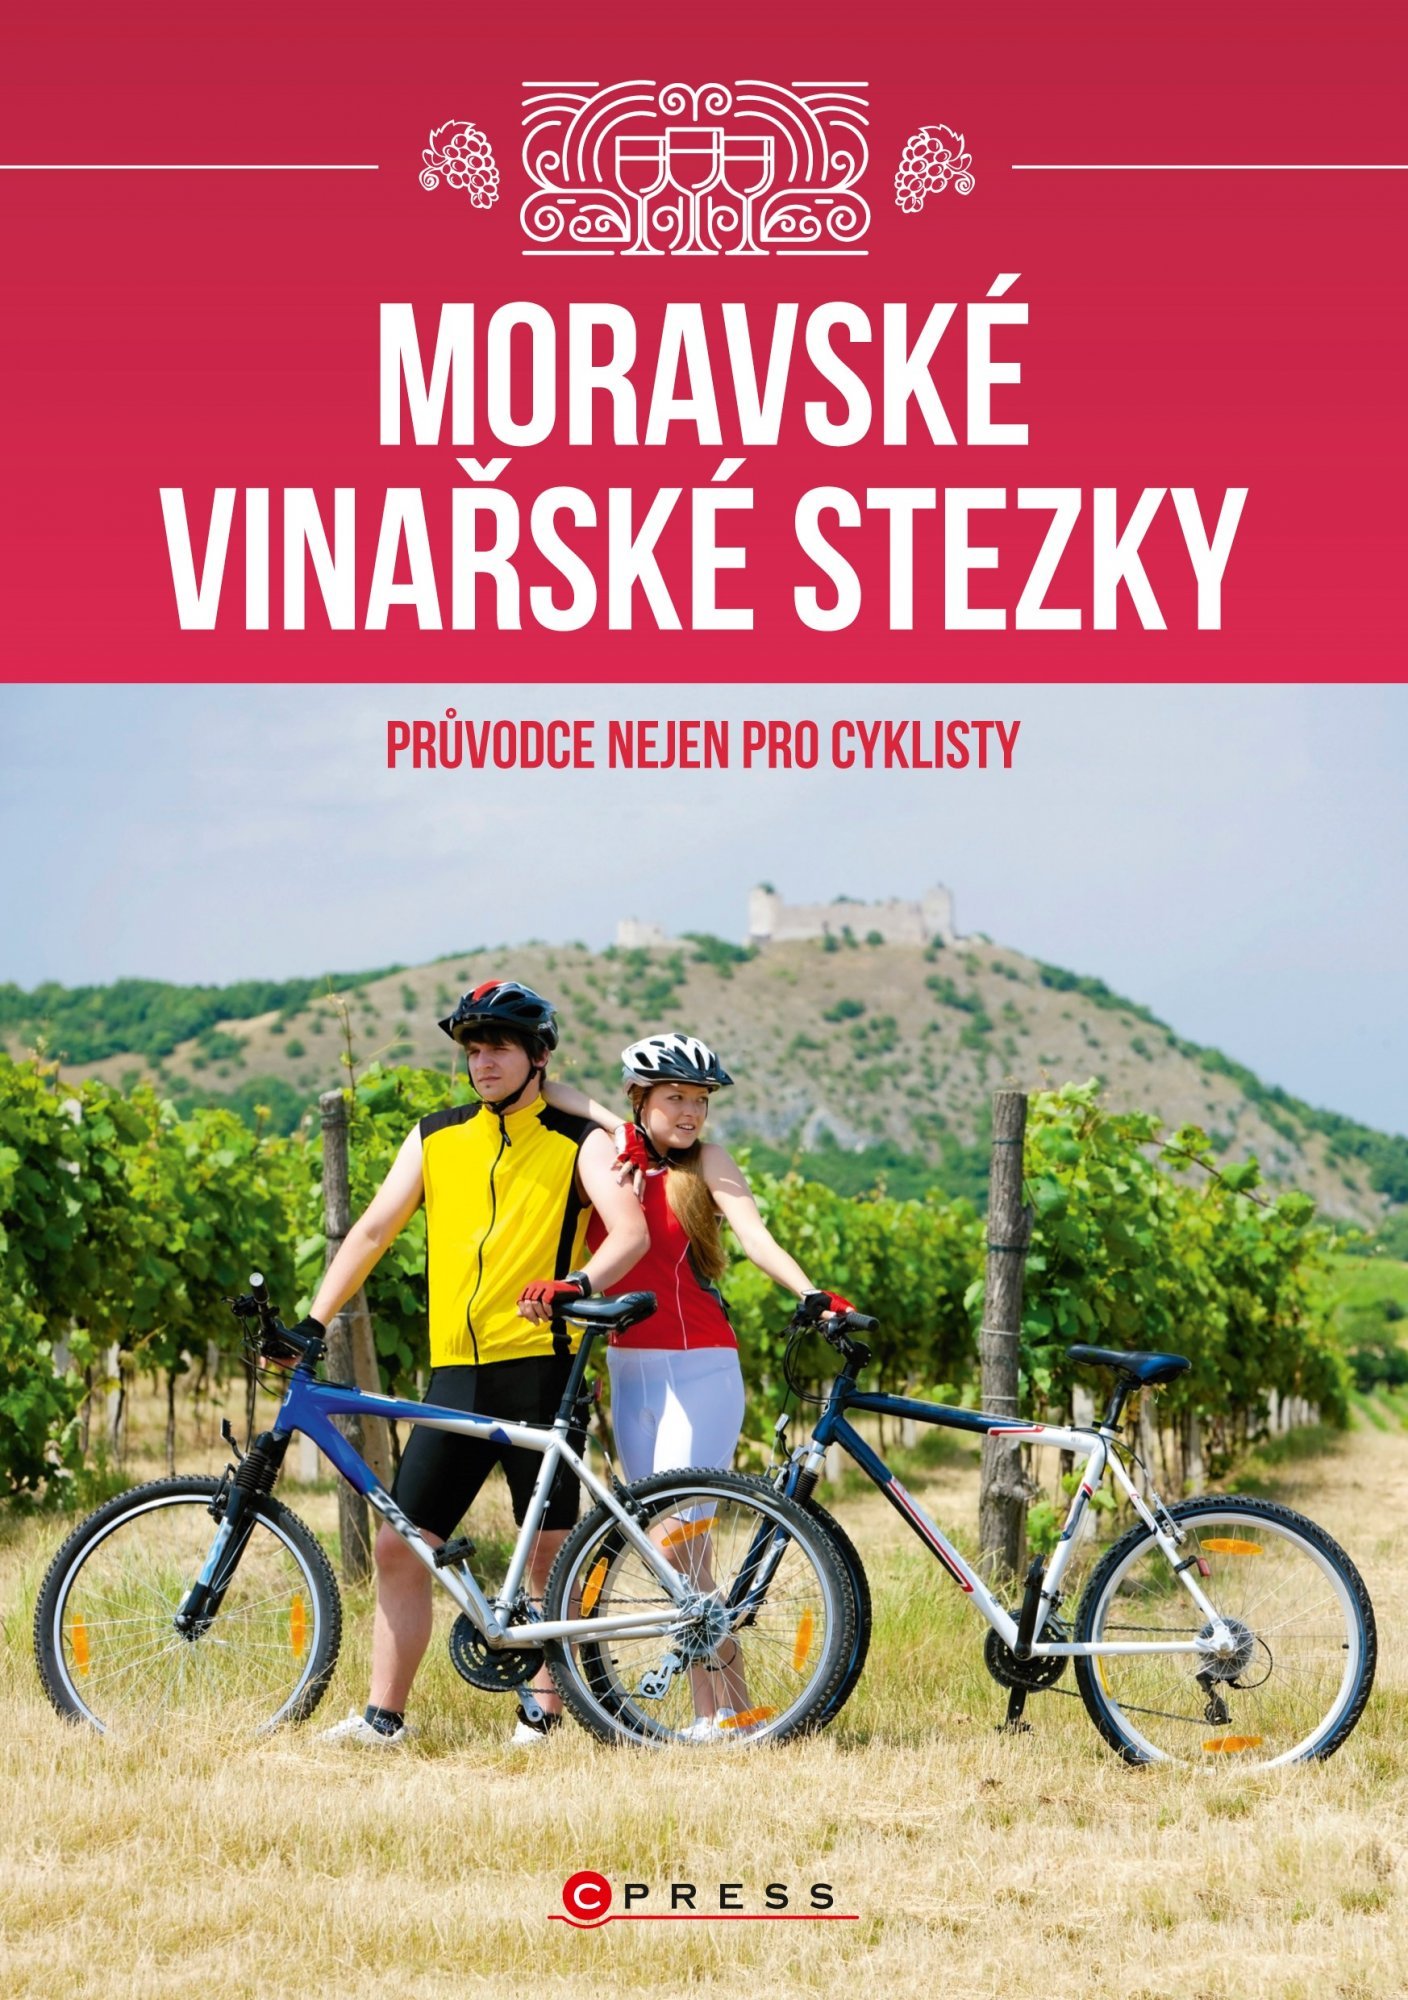 Moravské vinařské stezky - Vladimír Vecheta